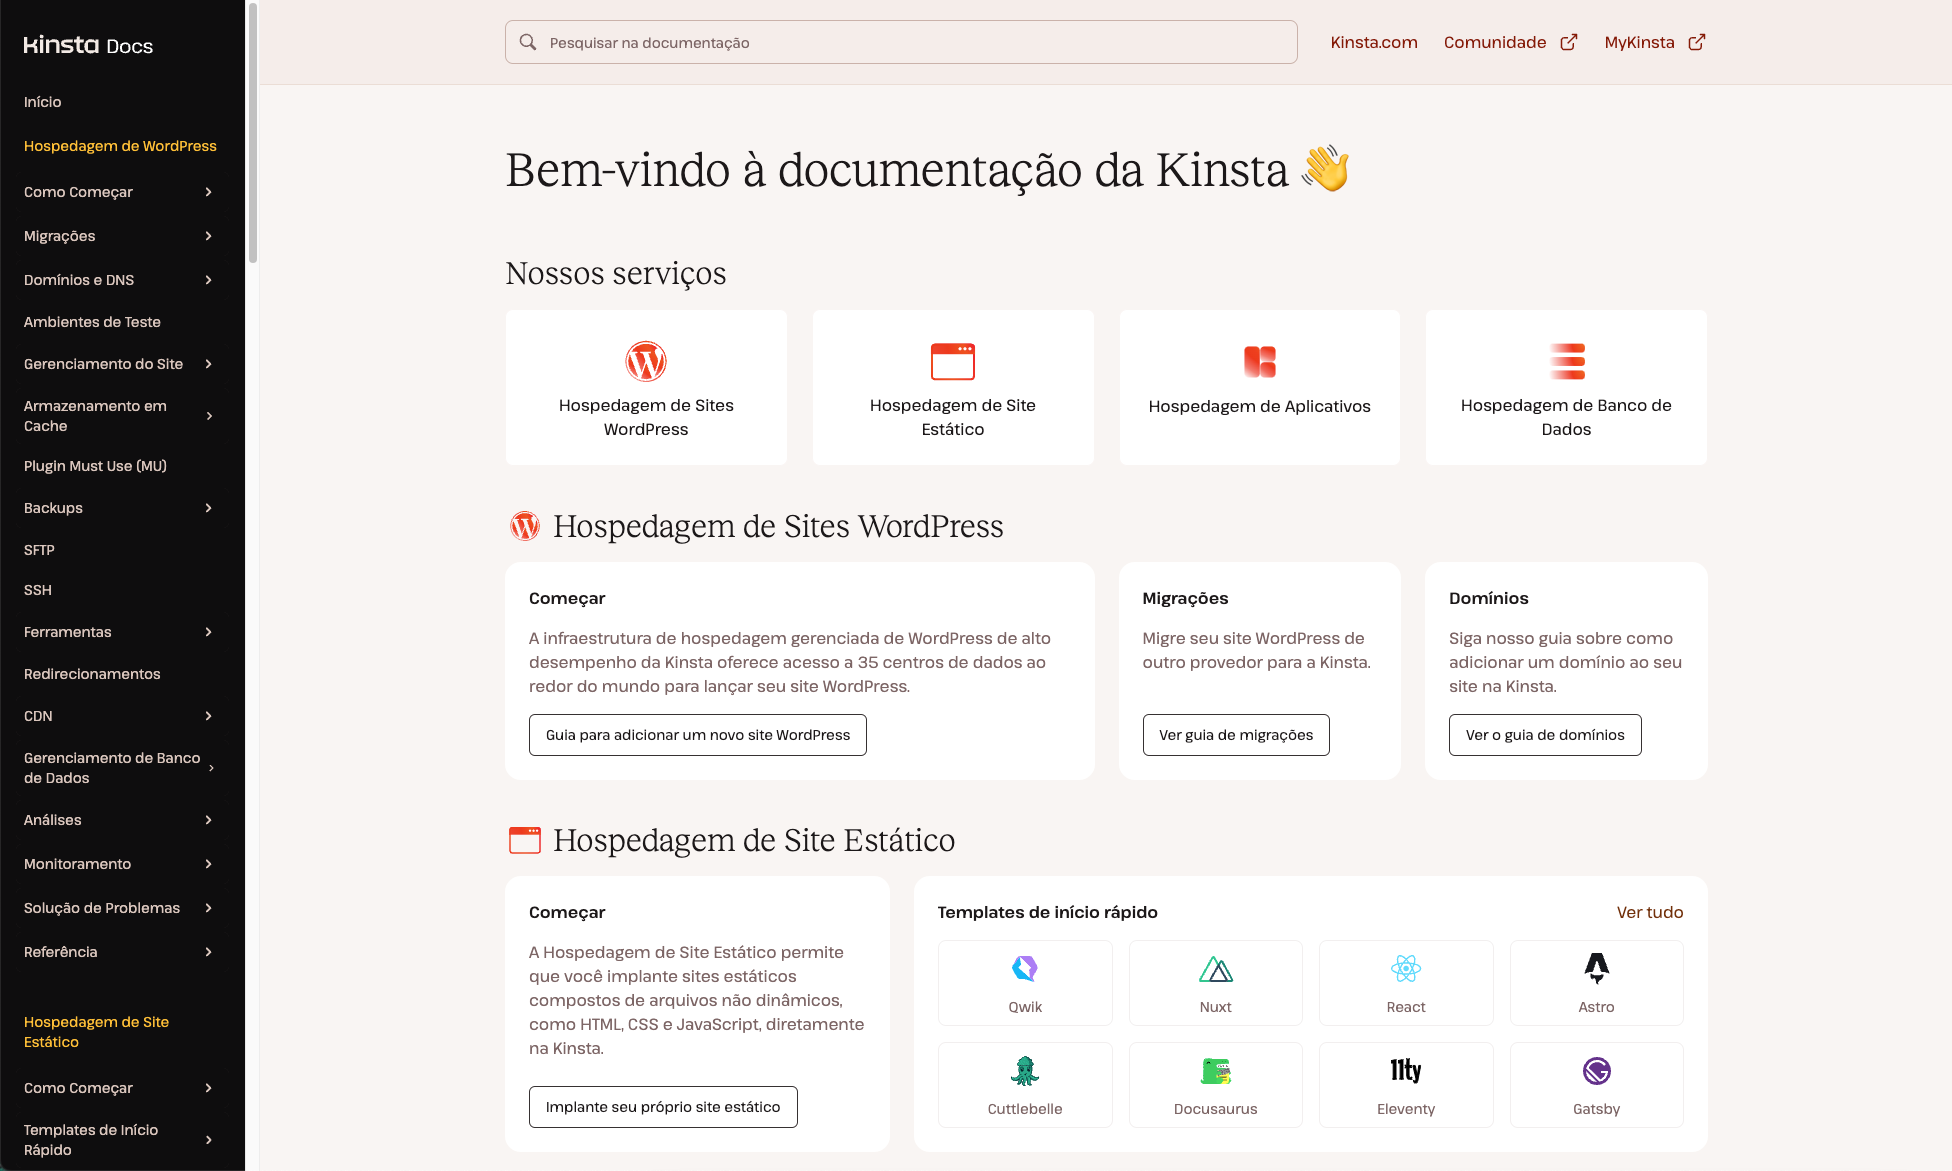 Se você quiser saber mais sobre a documentação da Kinsta, confira a página inicial em português.